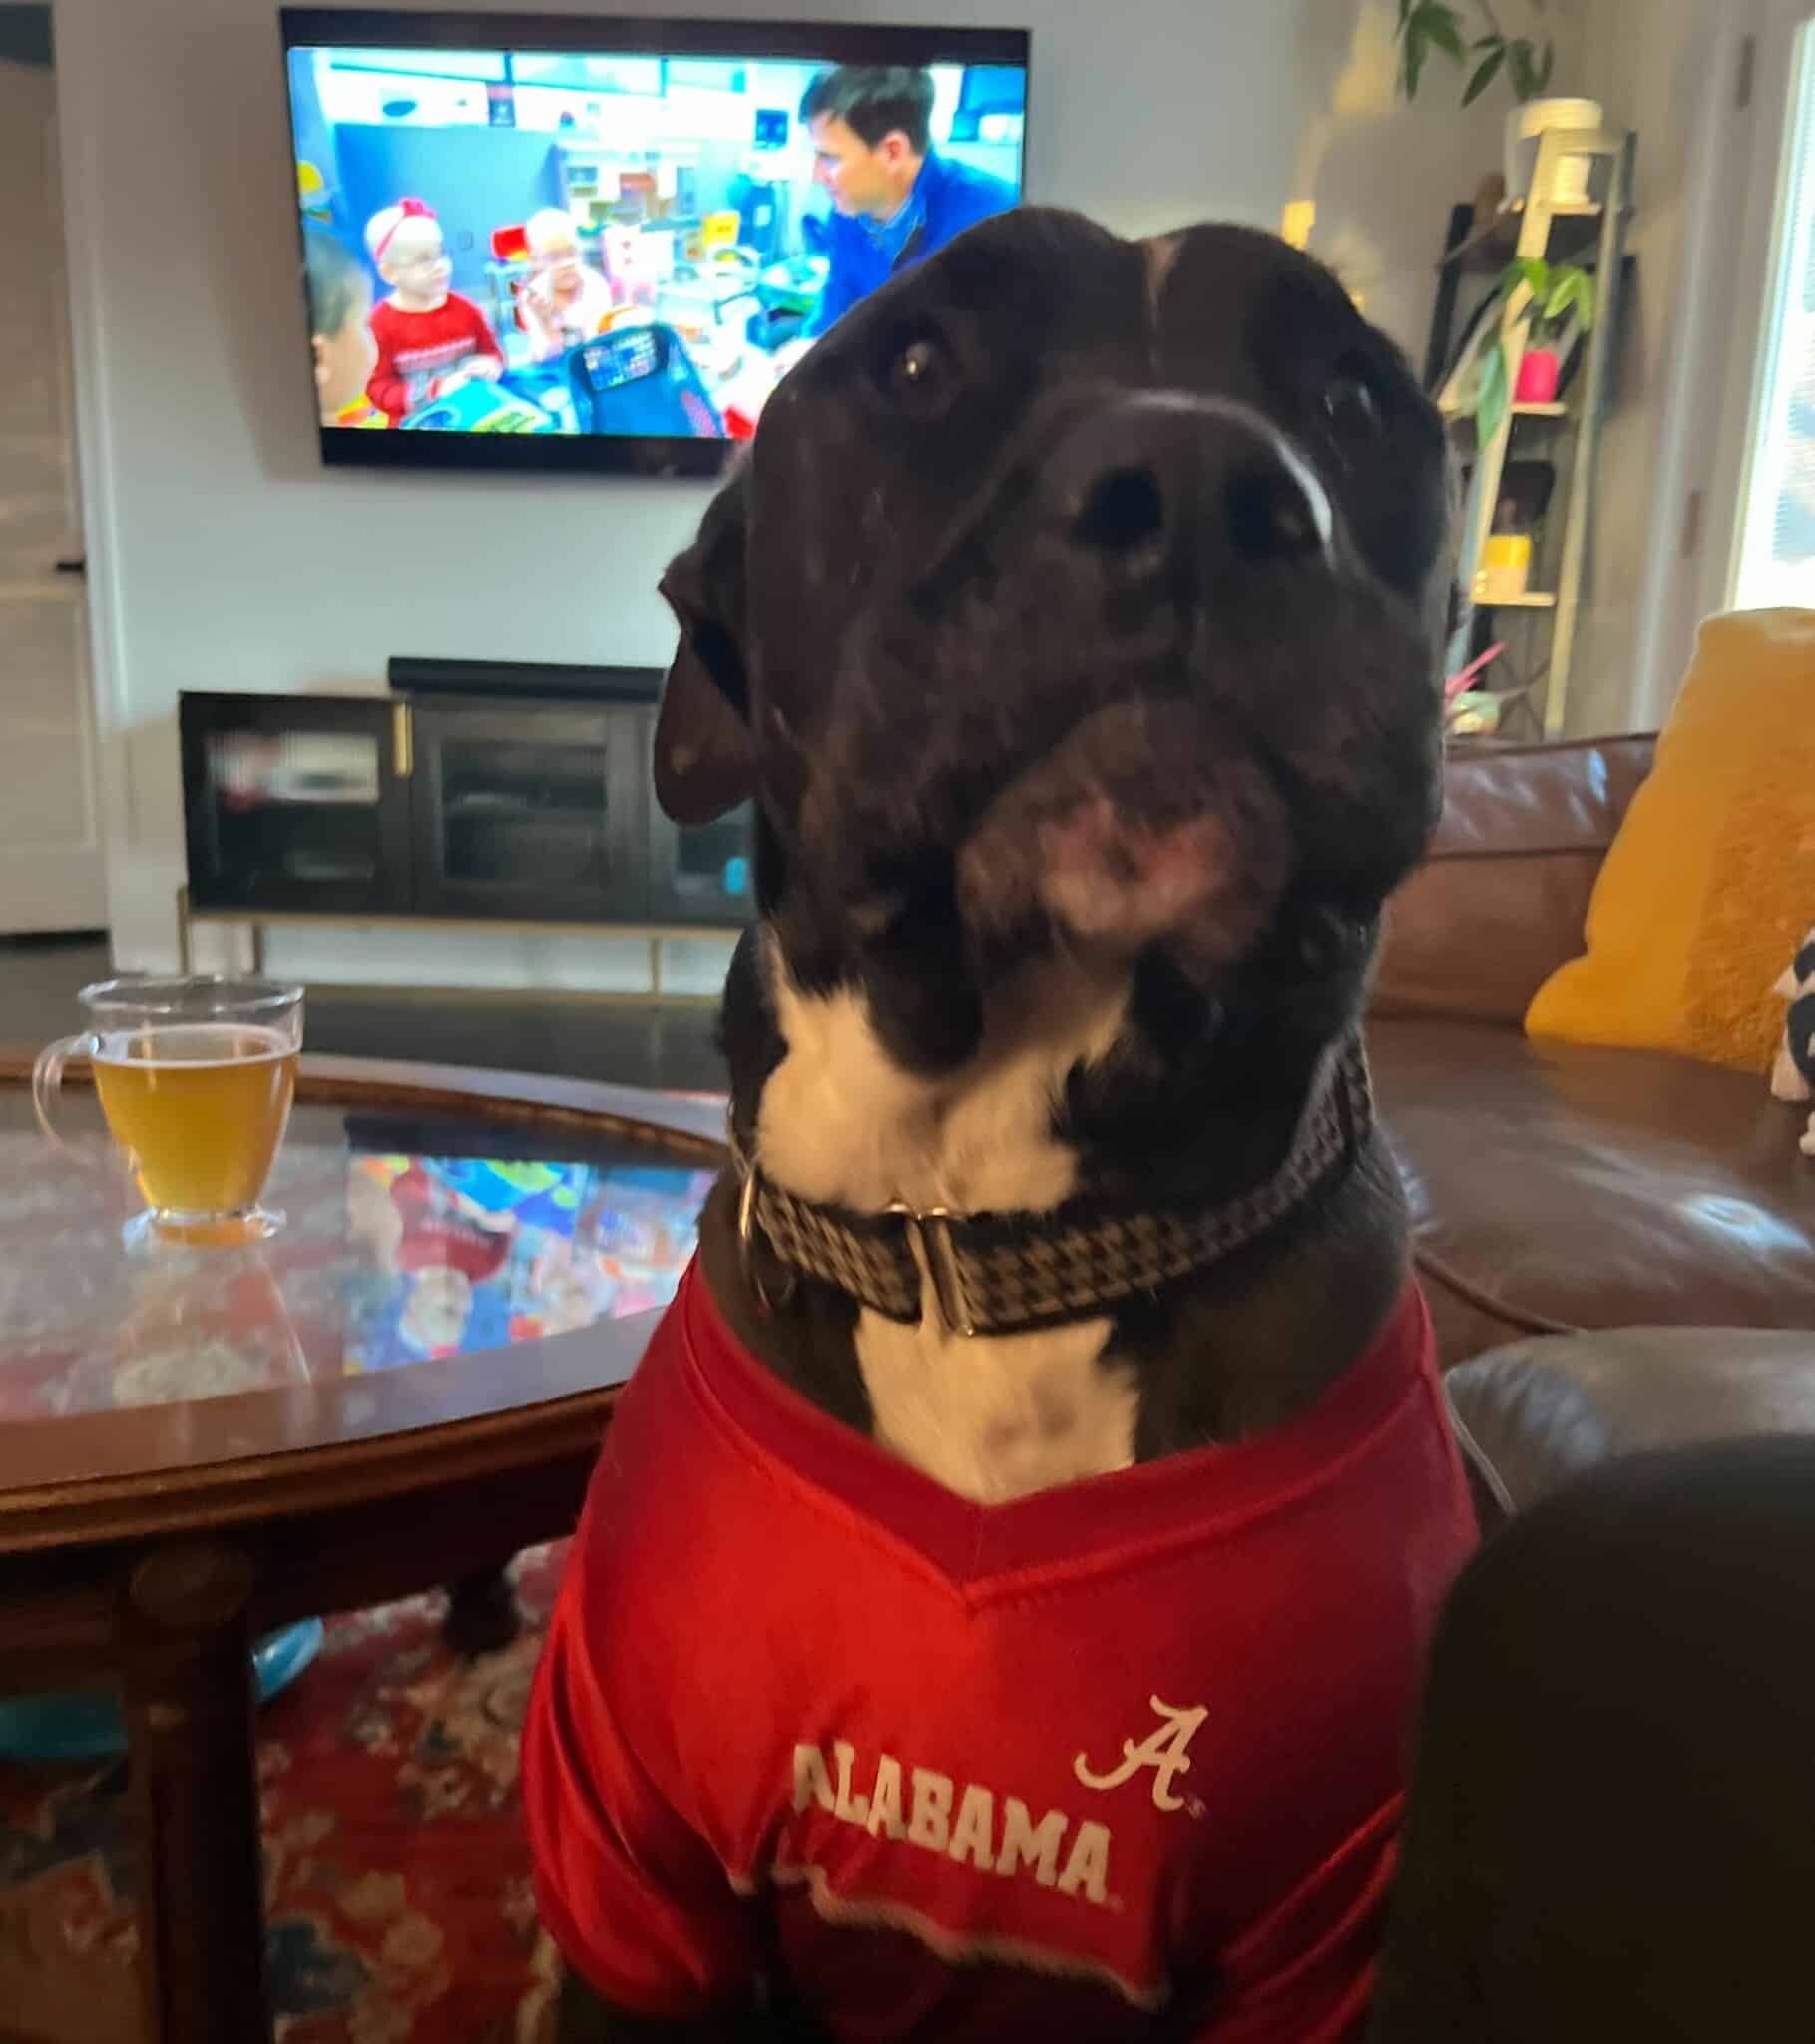 Large black dog proudly wearing an Alabama jersey